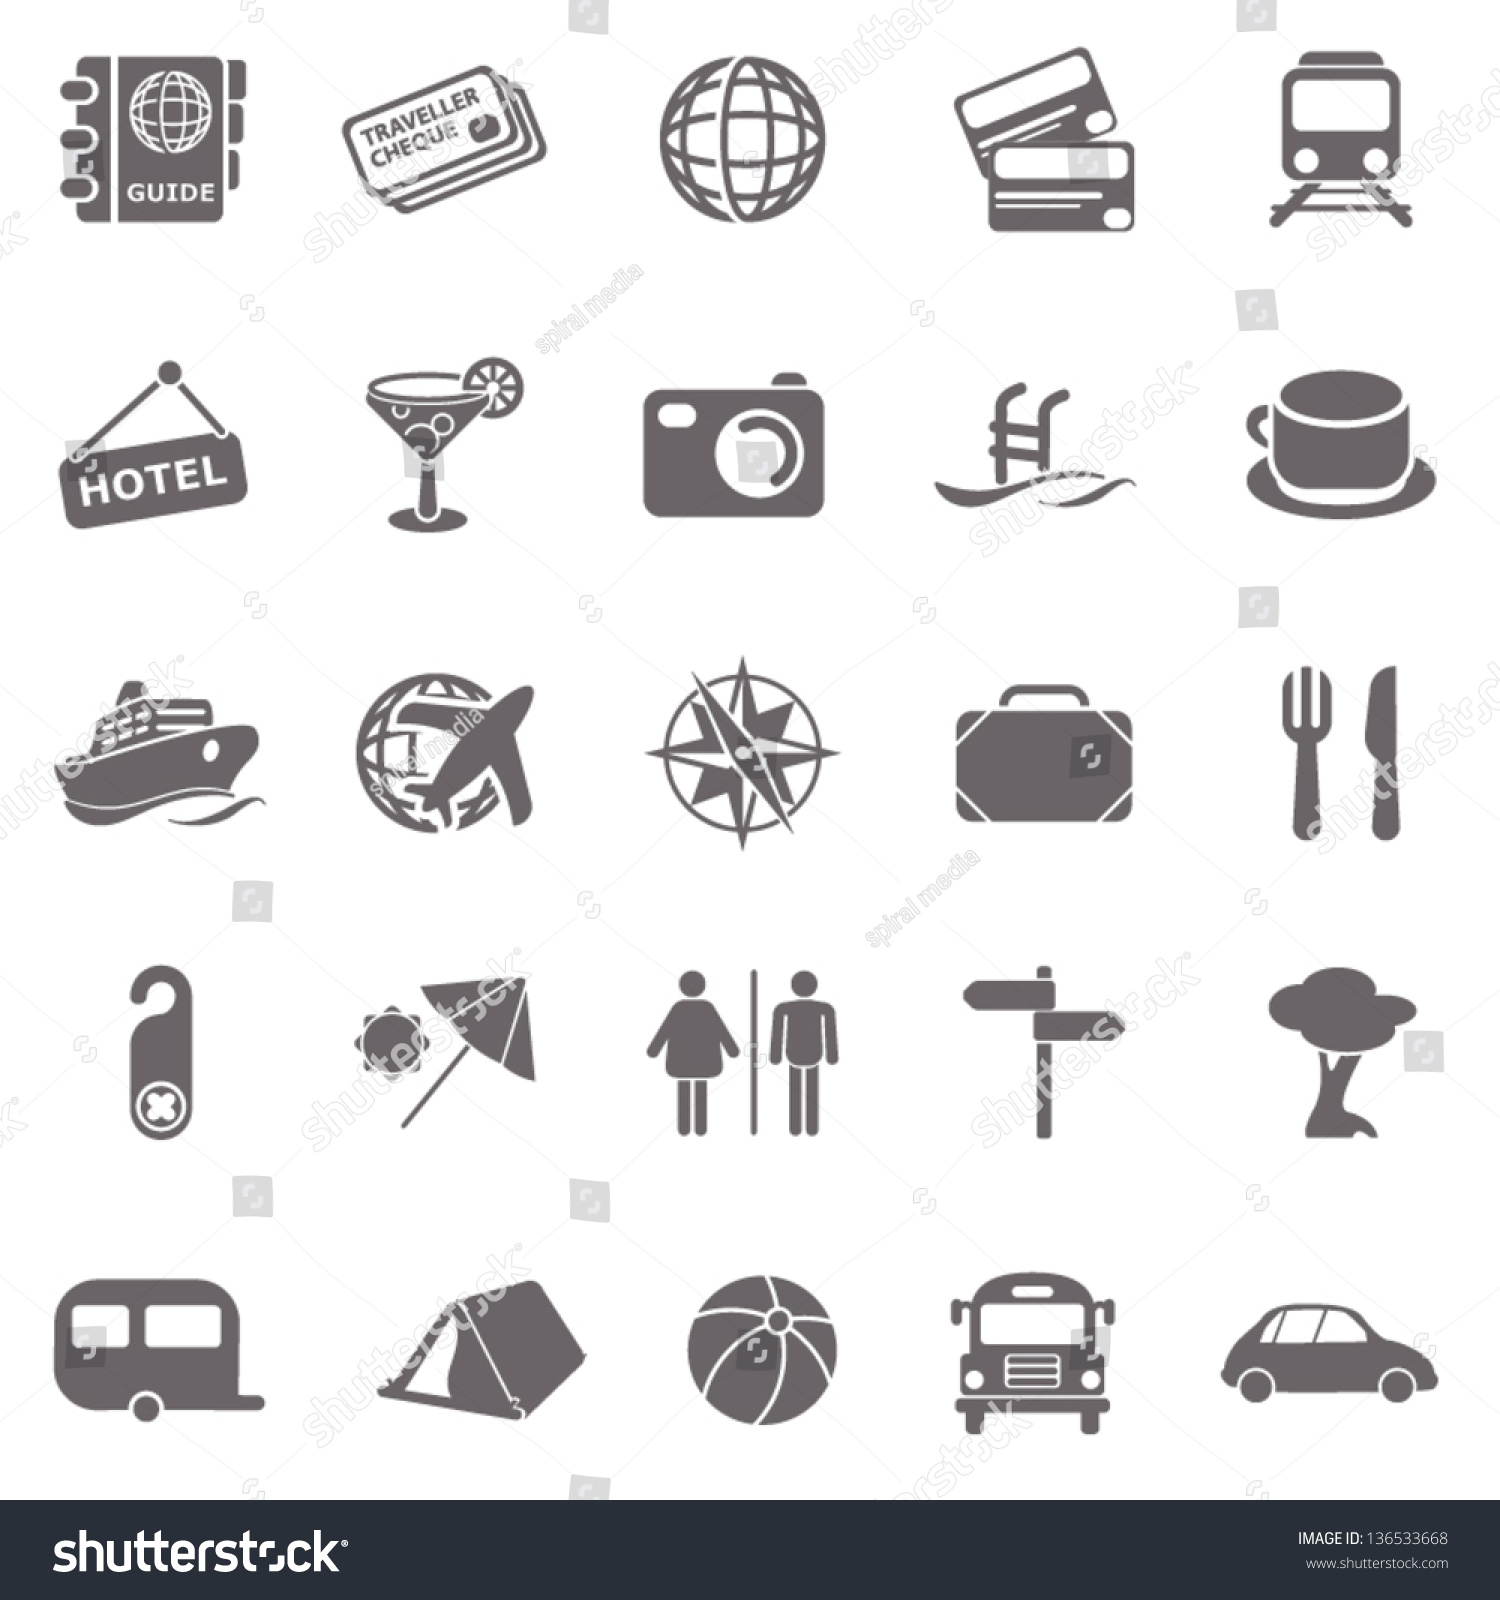 Travel Basic Icons Stock Vector Illustration 136533668 : Shutterstock